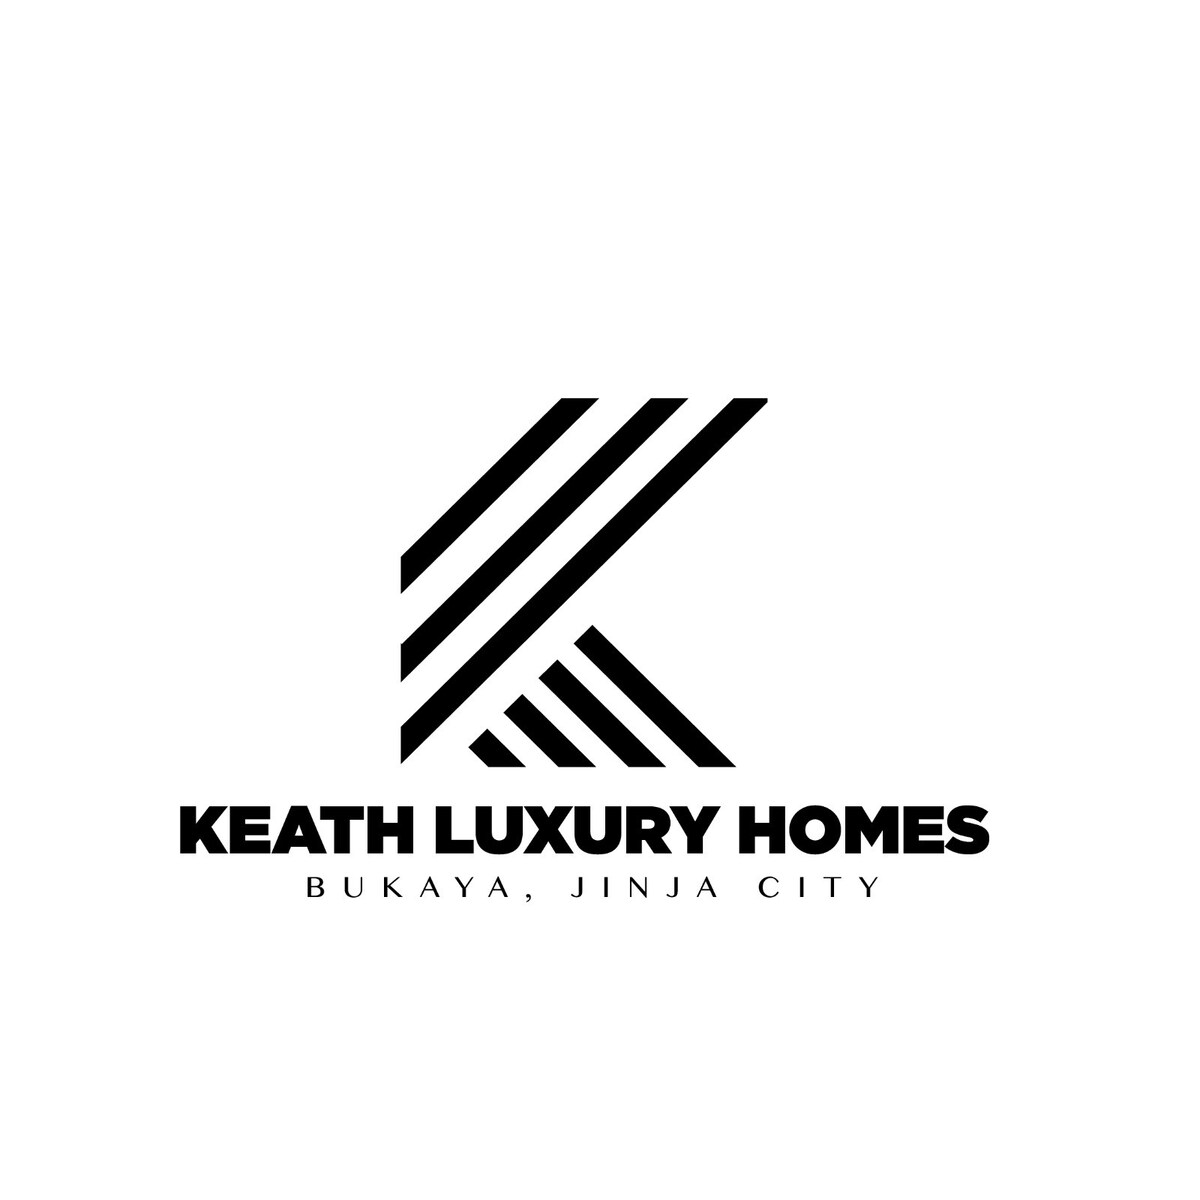 Keath Luxury homes